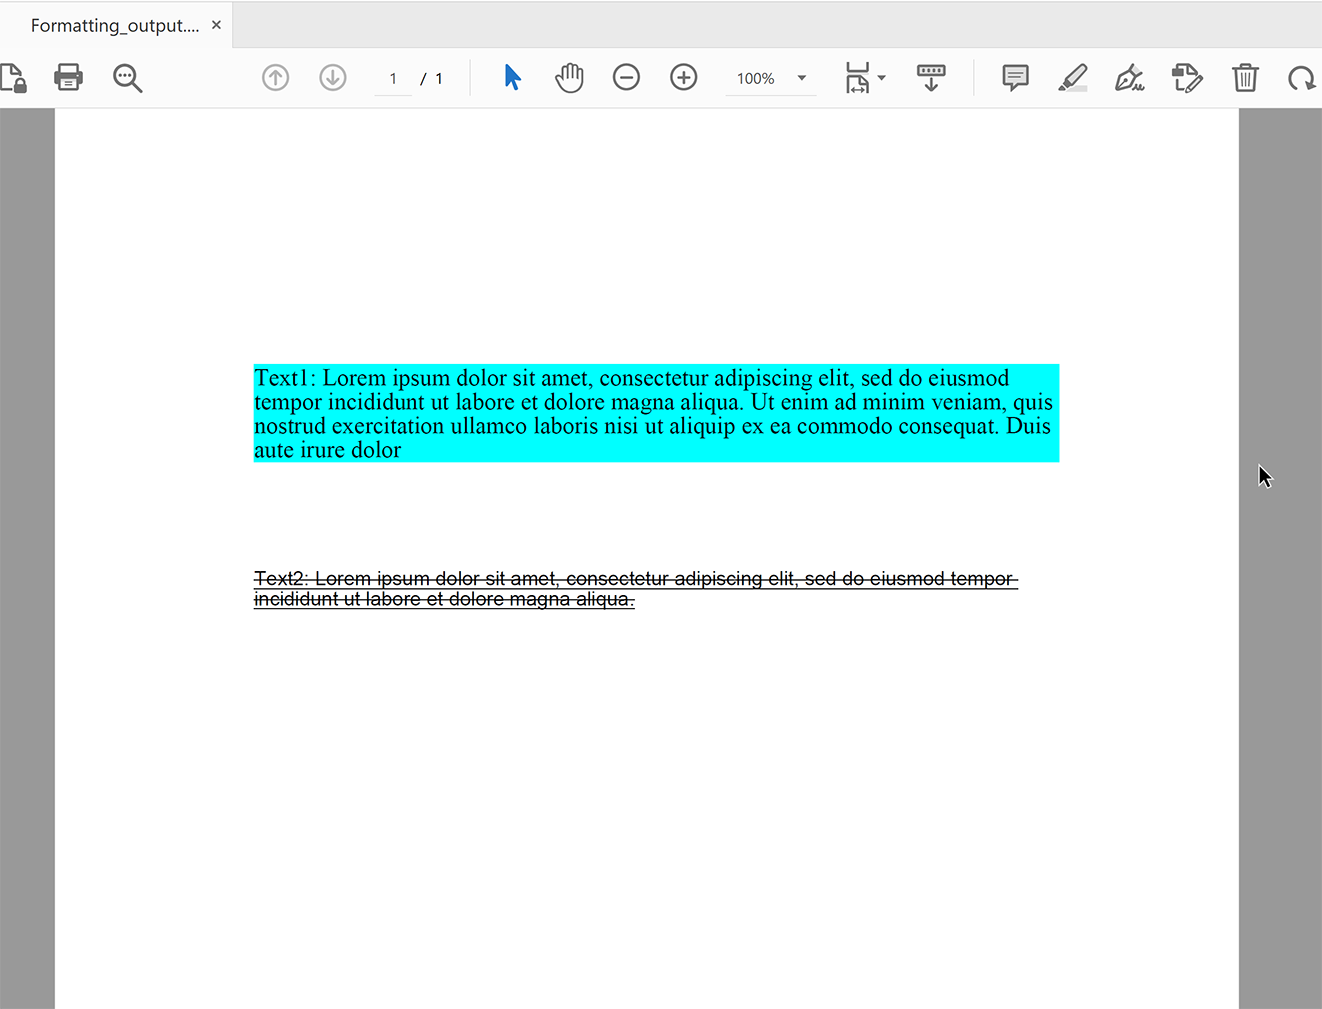 Aplicar formatação de texto em PDFs usando Python